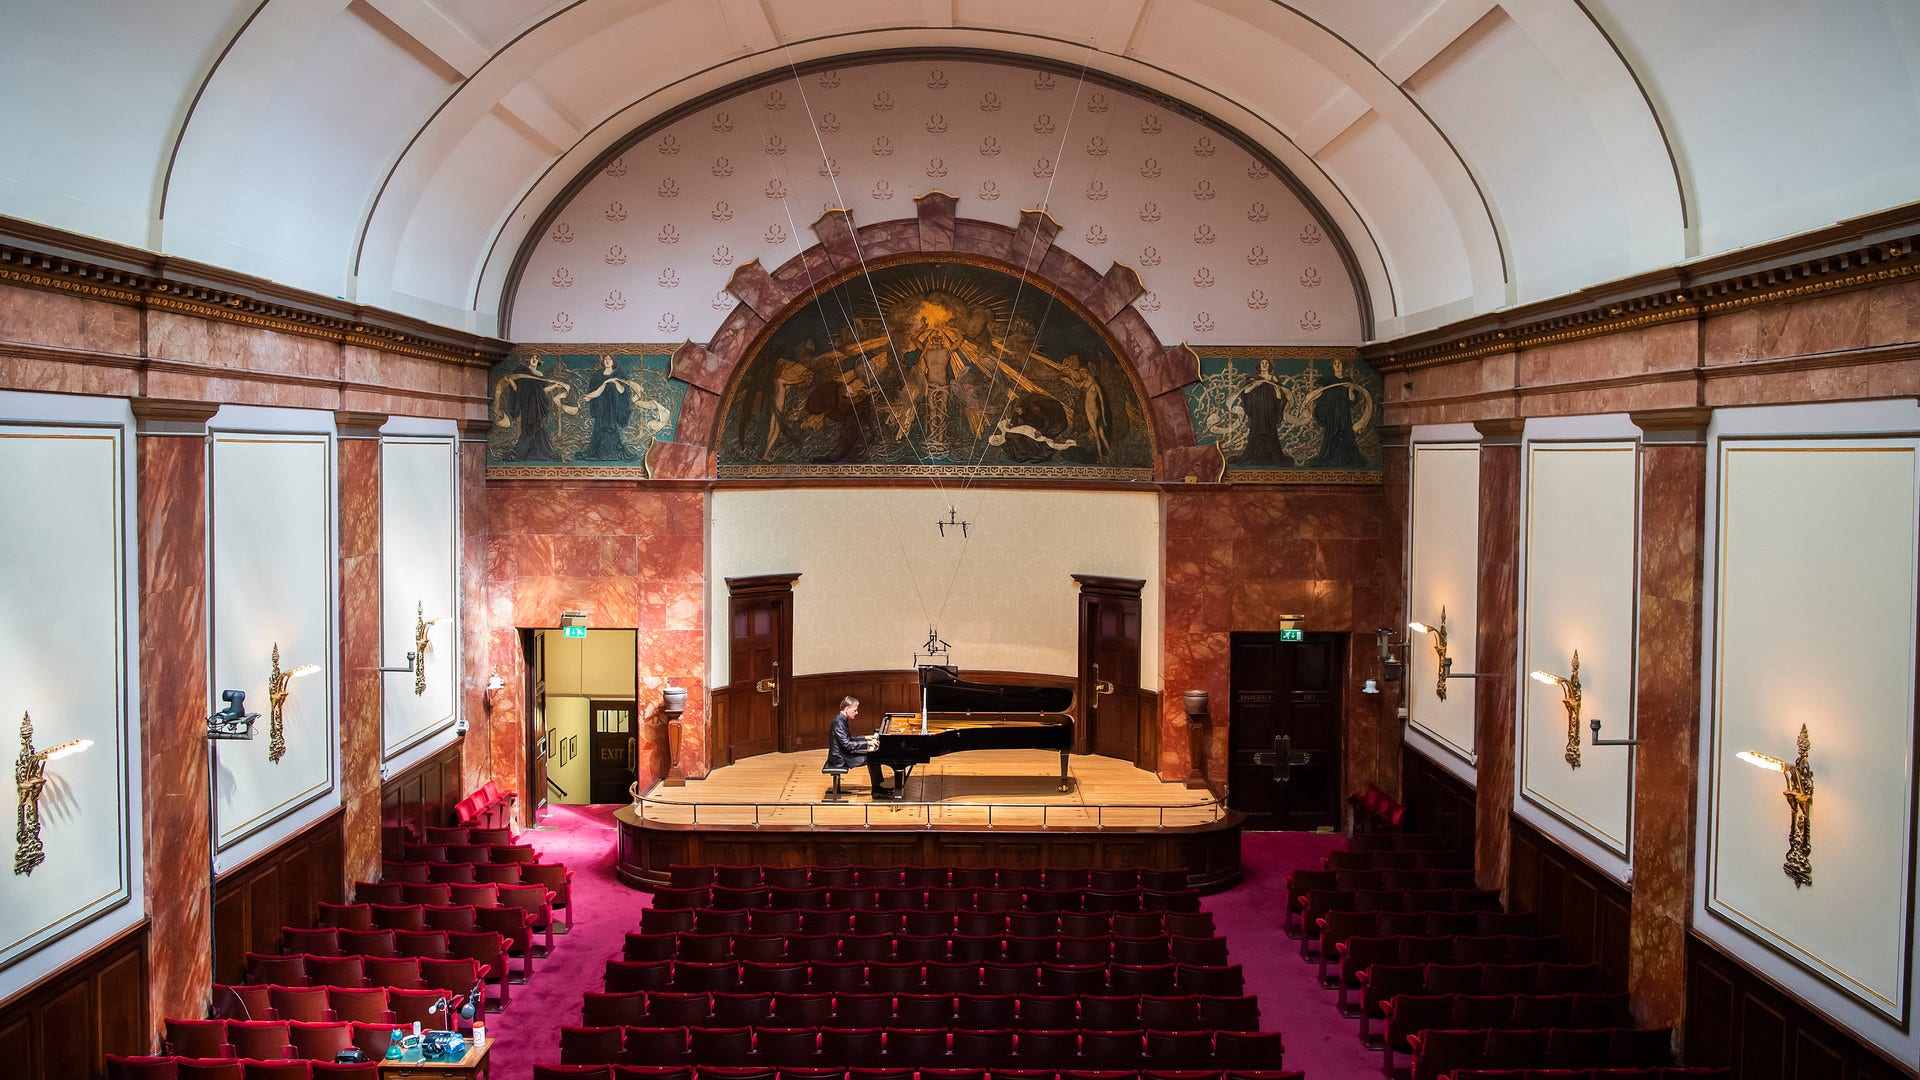 Wigmore Hall efterlyser klassisk musik om ”lockdowns” DN.se